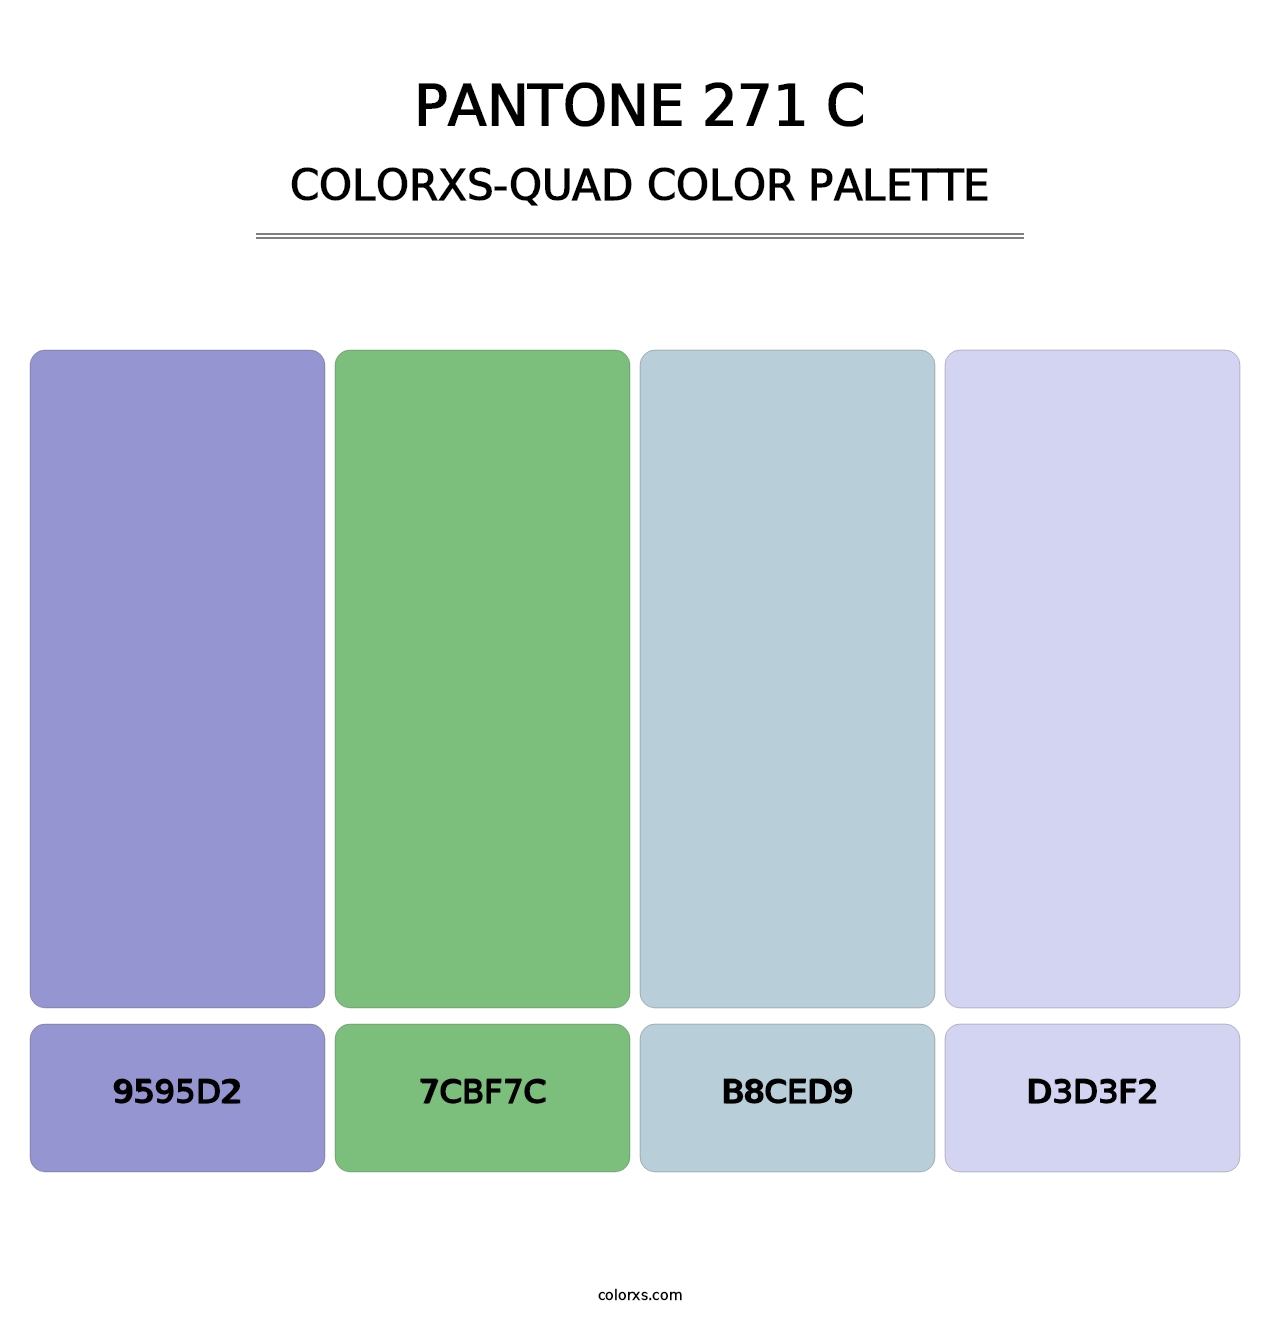 PANTONE 271 C - Colorxs Quad Palette